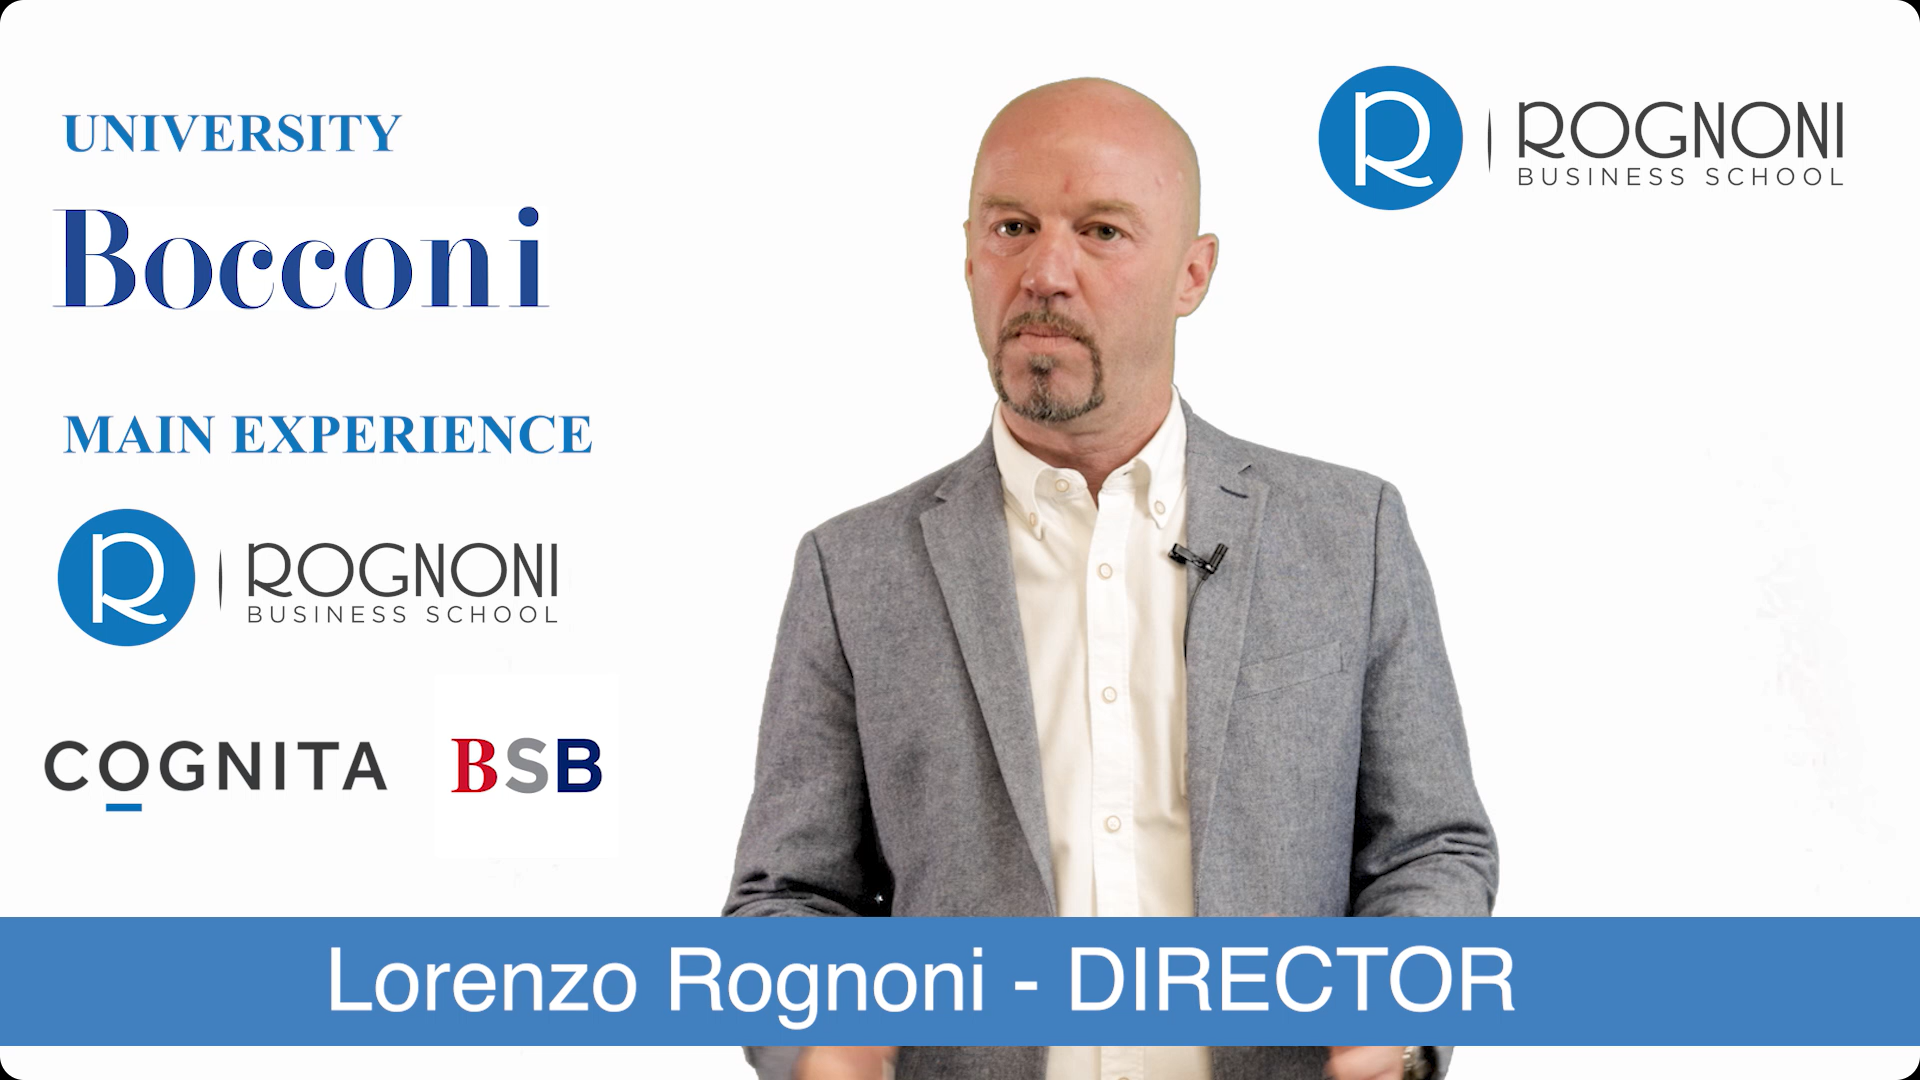 LORENZO ROGNONI è il fondatore e direttore della RBS.<br />
<br />
È laureato in Economia con indirizzo Marketing presso l'università L.Bocconi<br />
<br />
Ha dieci anni di esperienza nel settore dell'educazione. É stato direttore in centri britannici, spagnoli ed italiani